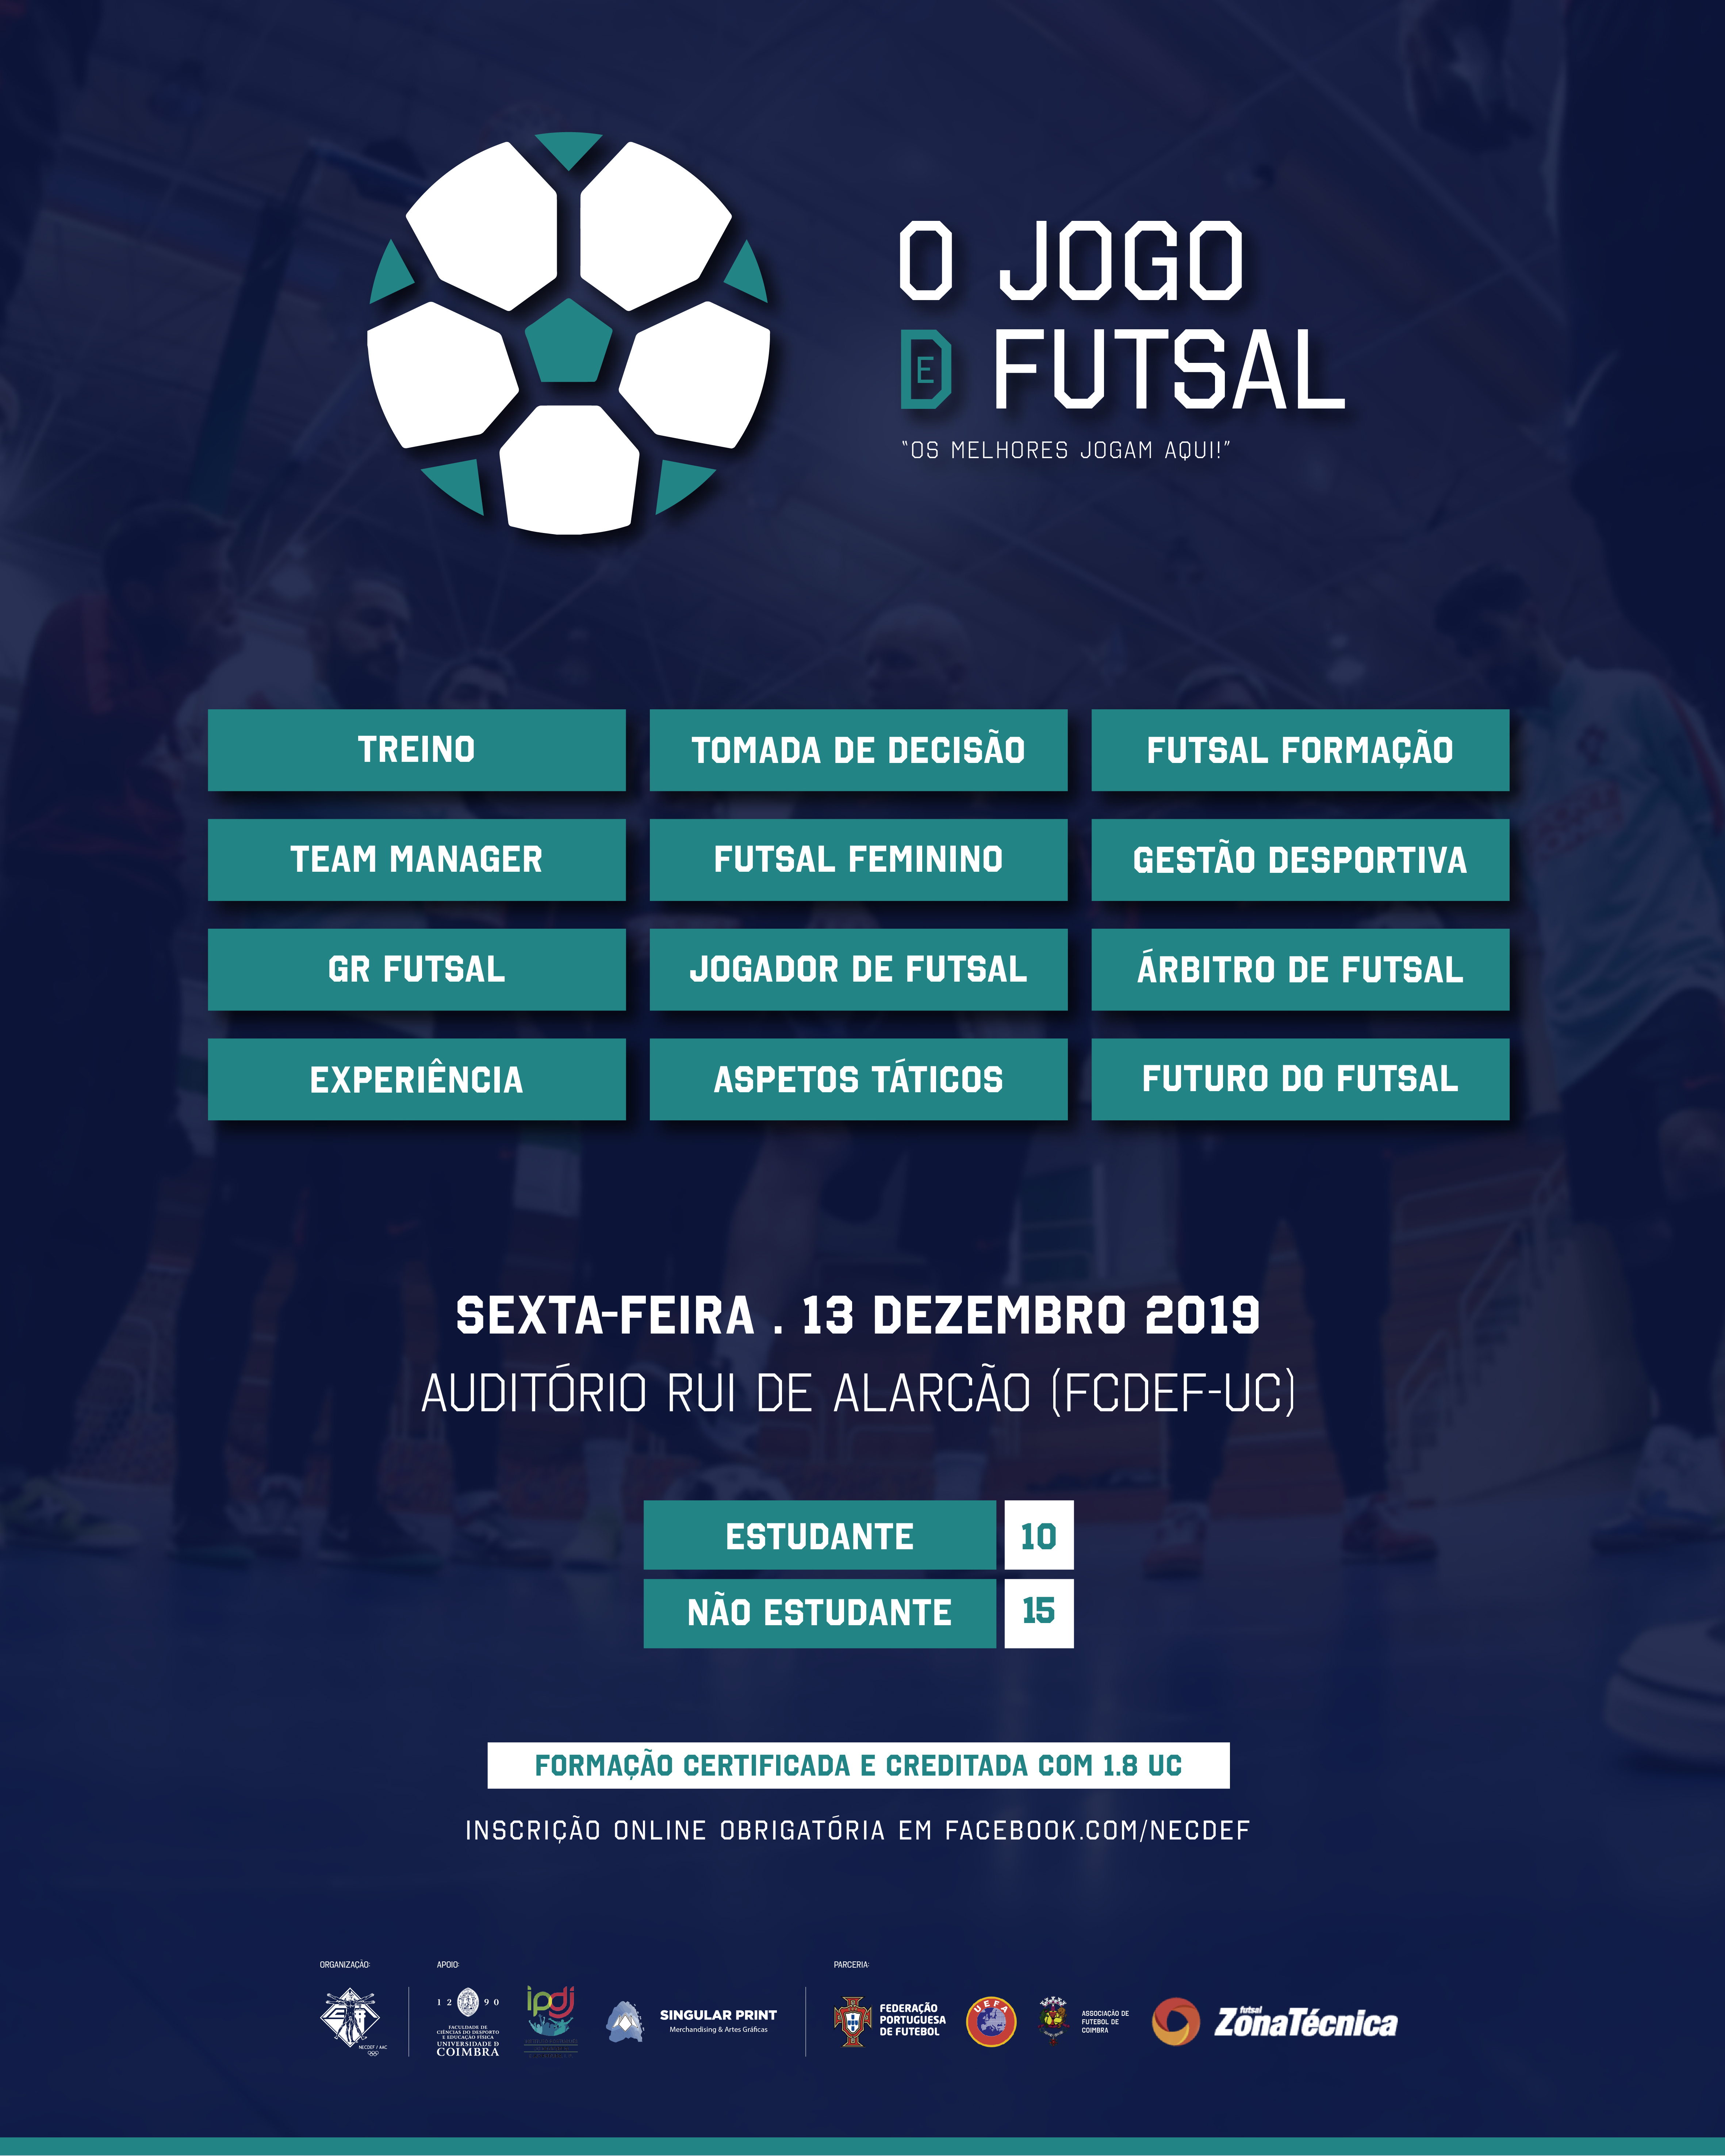 Seminário "O Jogo de Futsal" é já dia 13 de dezembro - inscrições abertas